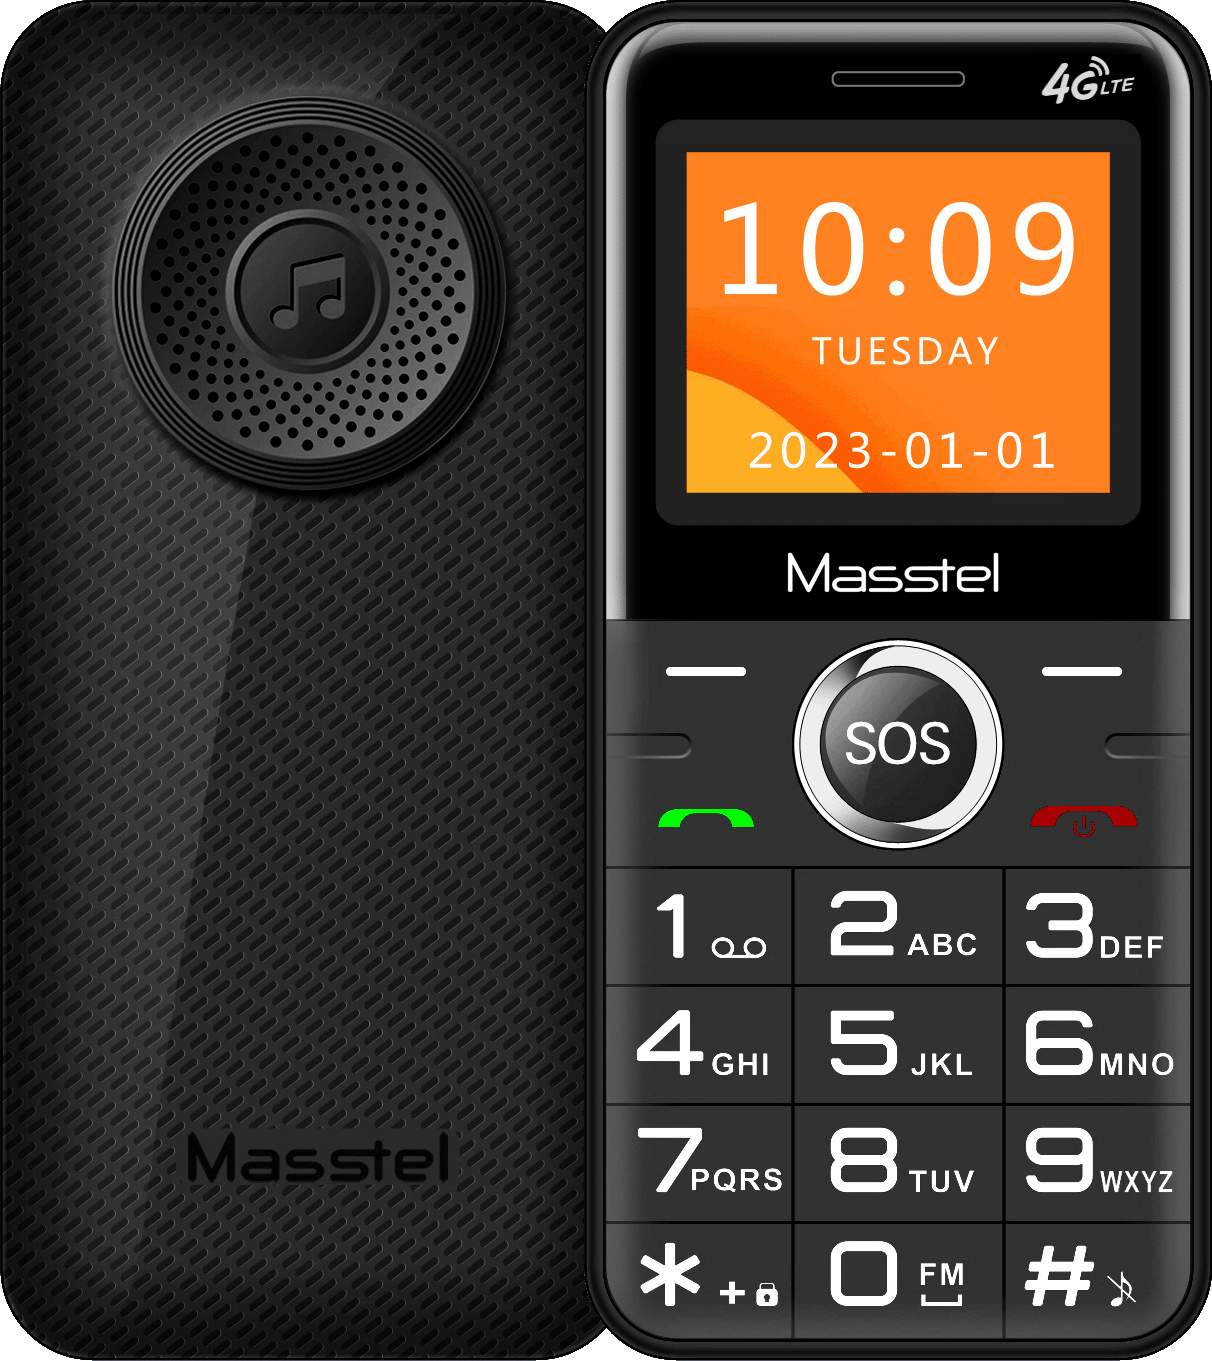 Điện thoại Masstel Fami 8 4G(LTE) Gọi HD call , Bàn phím chữ số lớn,Loa to - Hàng chính hãng